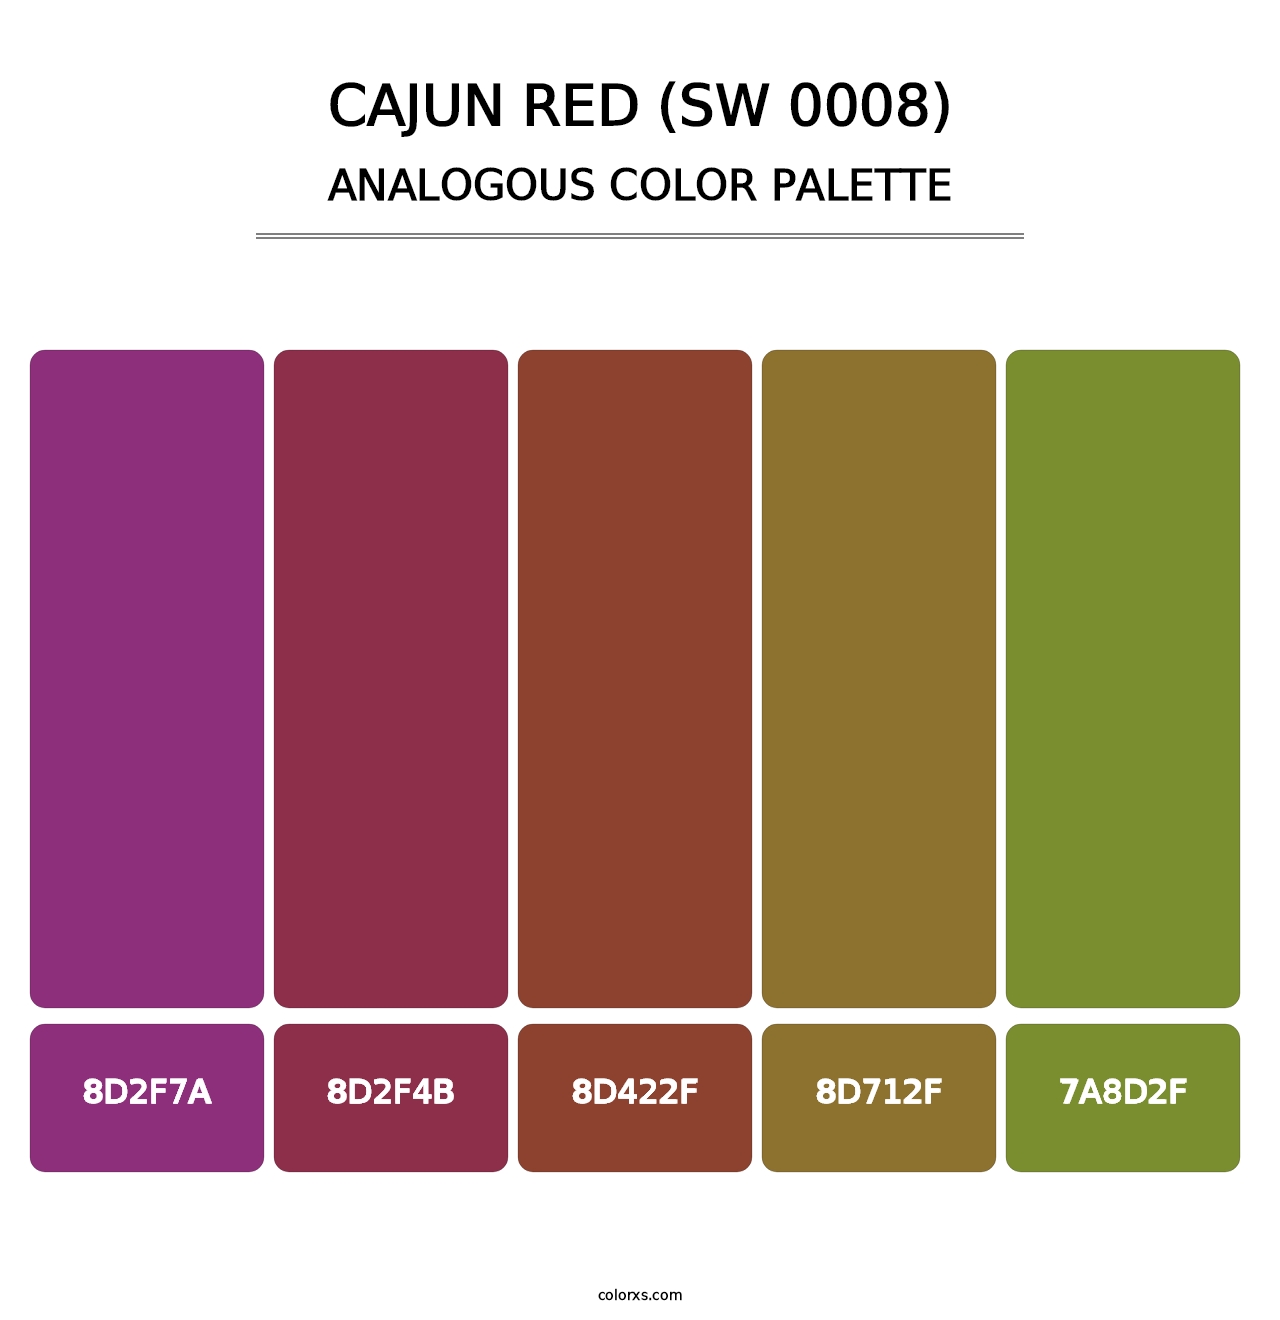 Cajun Red (SW 0008) - Analogous Color Palette